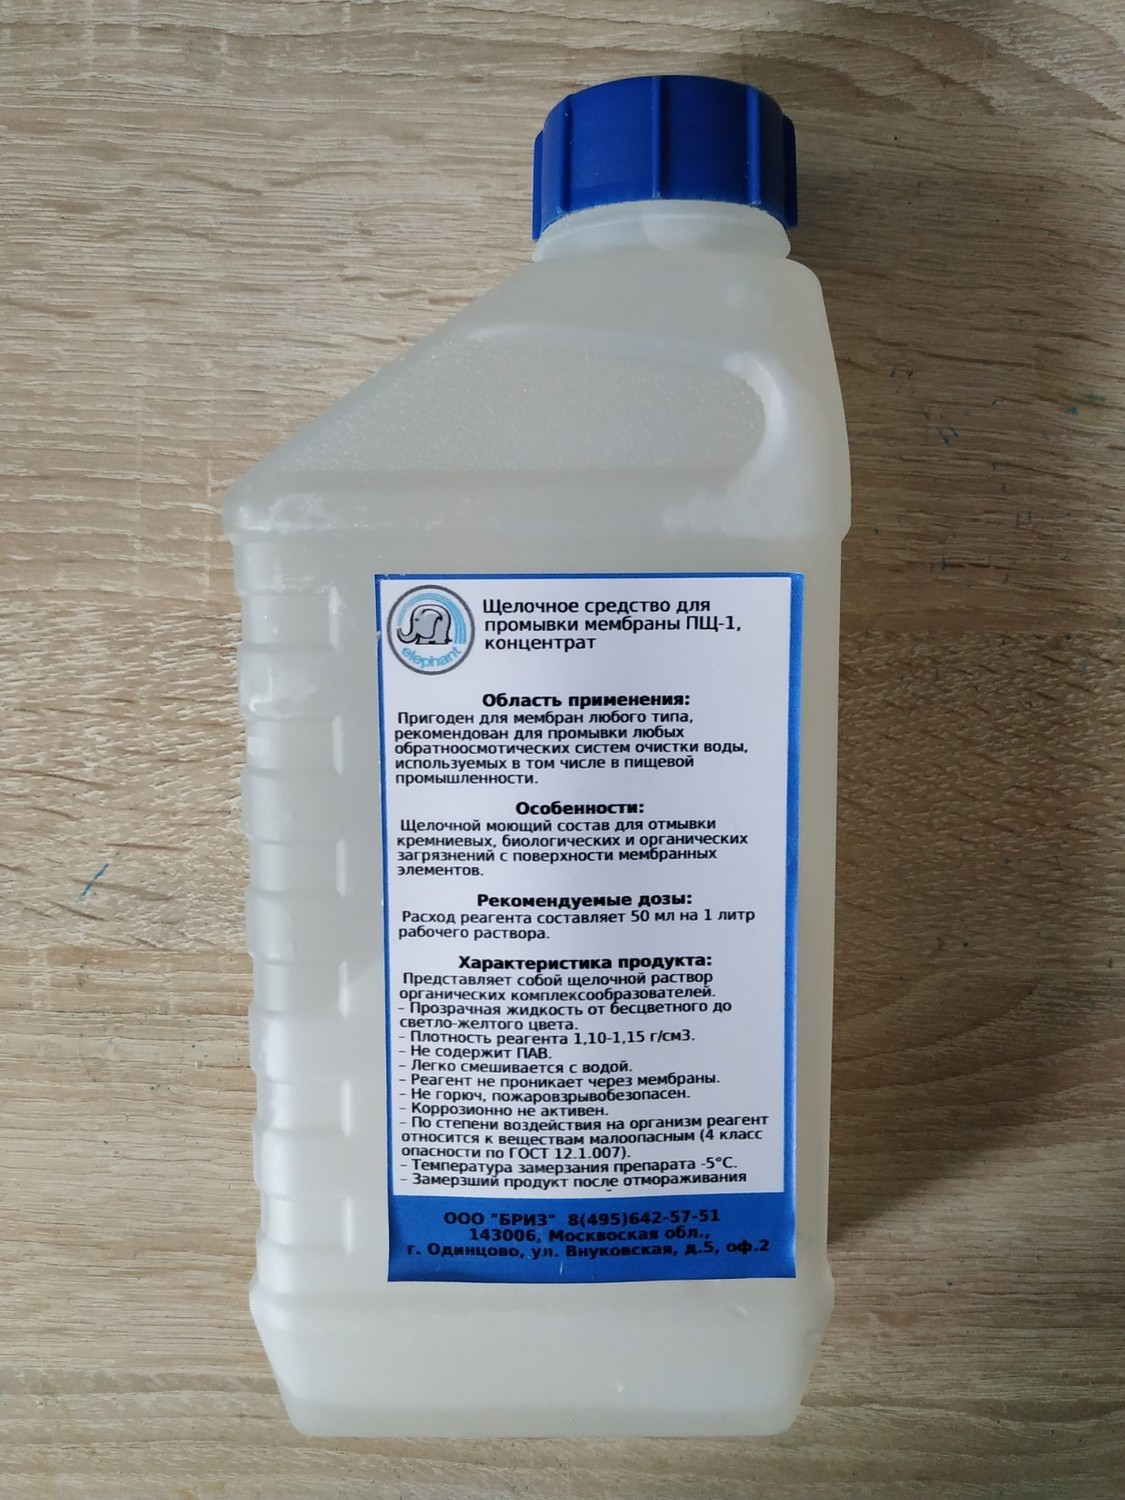 Щелочное средство для химической промывки мембраны ПЩ-1. Концентрат.